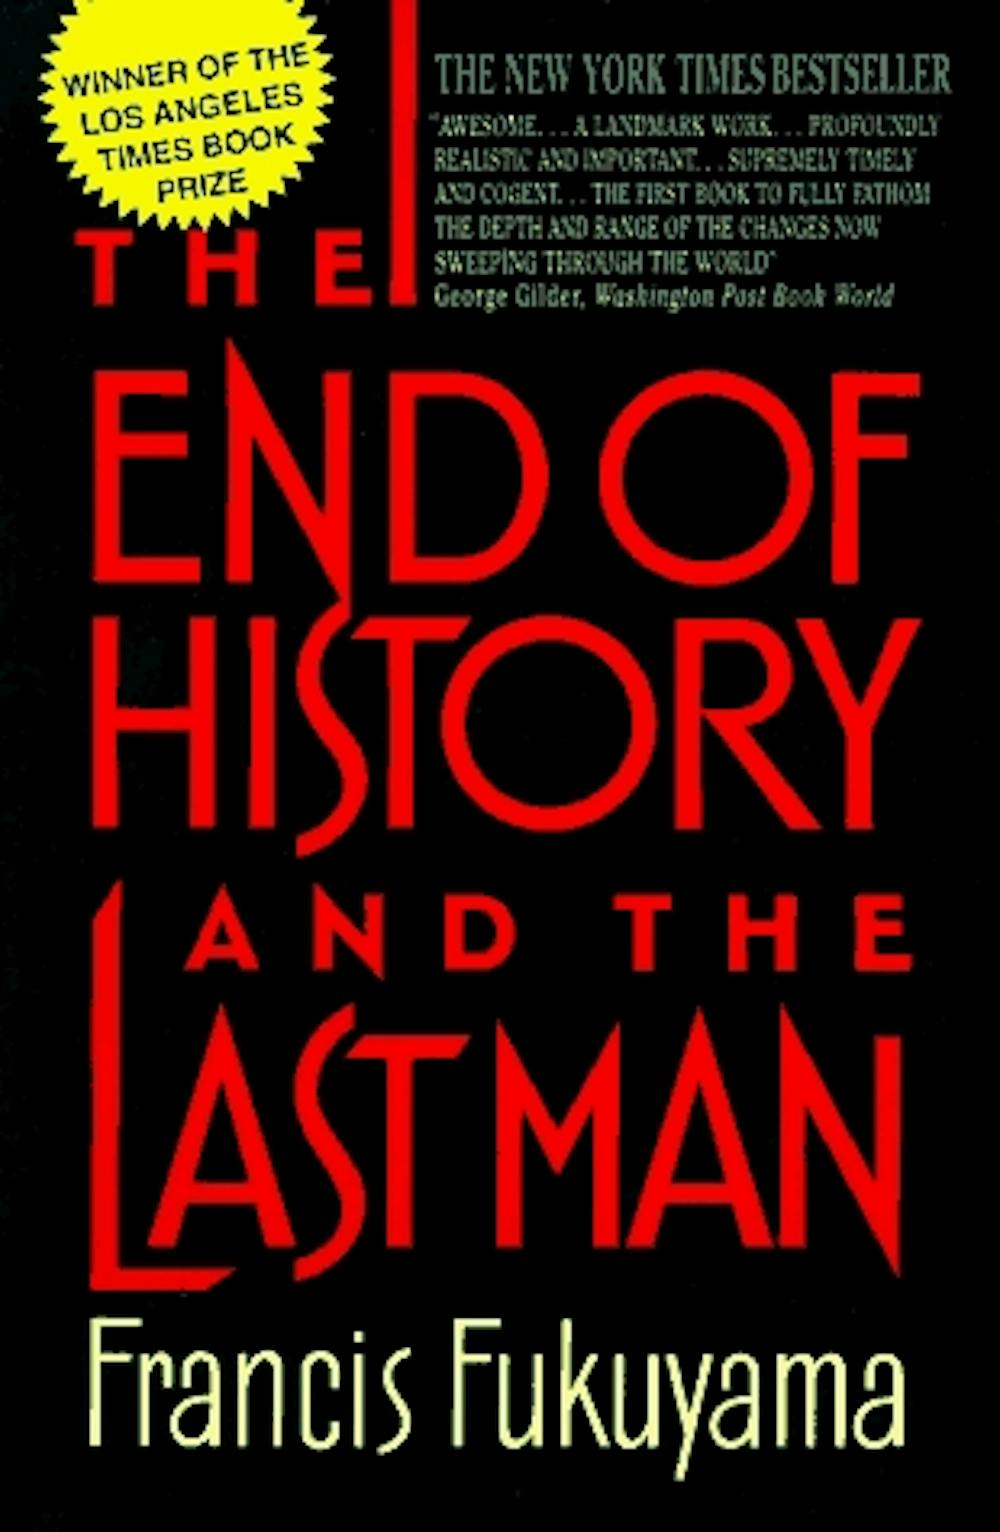 francis fukuyama the end of history essay summary